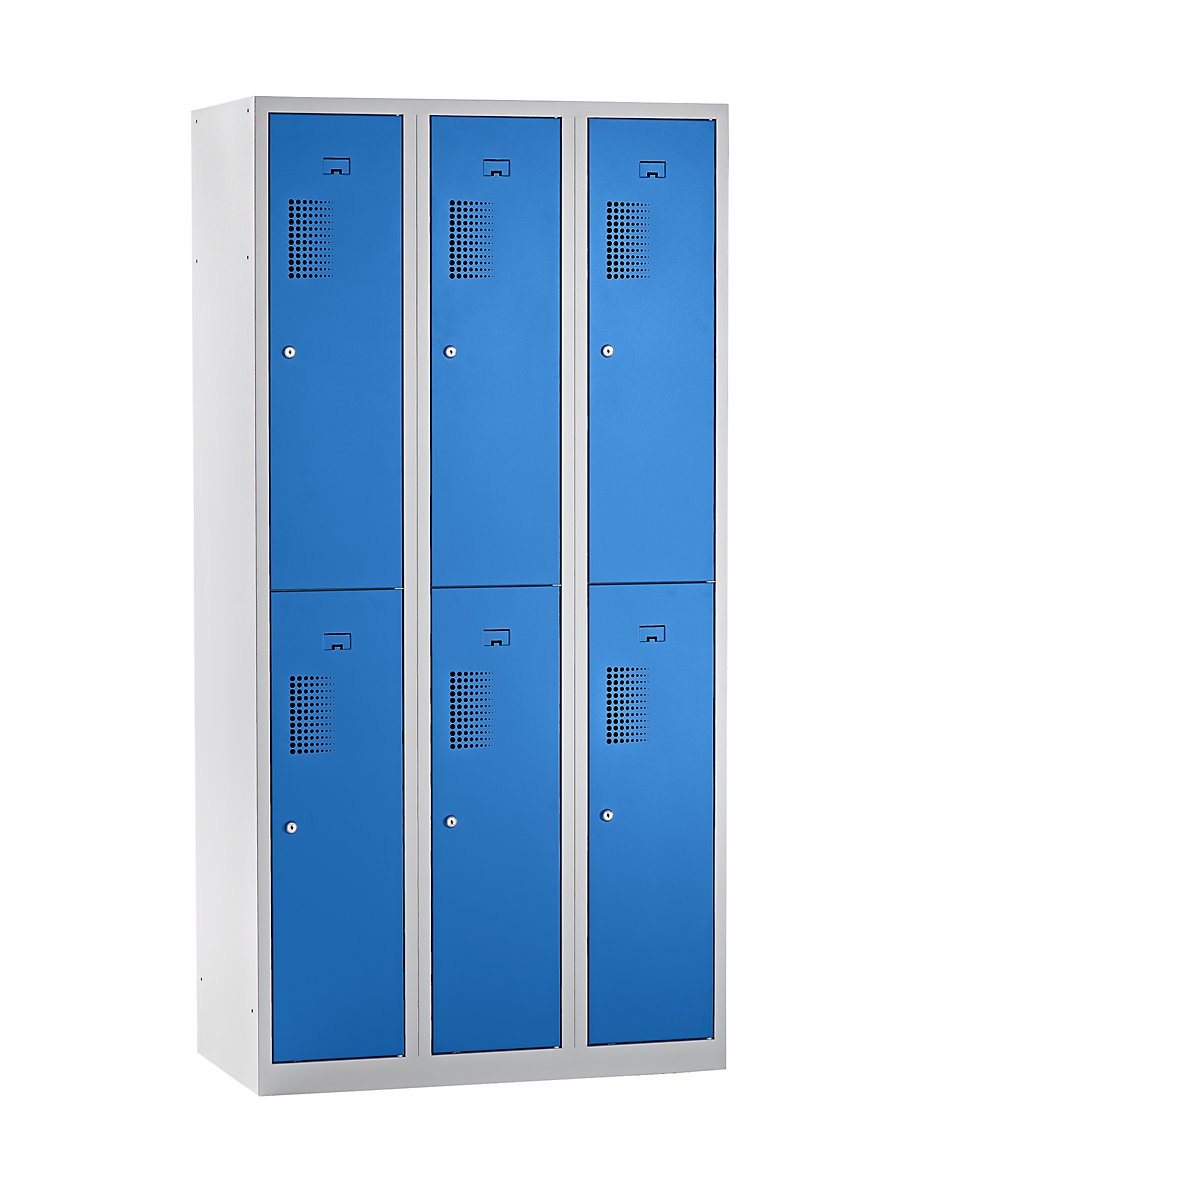 EUROKRAFTbasic Garderobenschrank, halbhohe Fächer, Breite 900 mm, 6 Fächer, lichtgrau / lichtblau